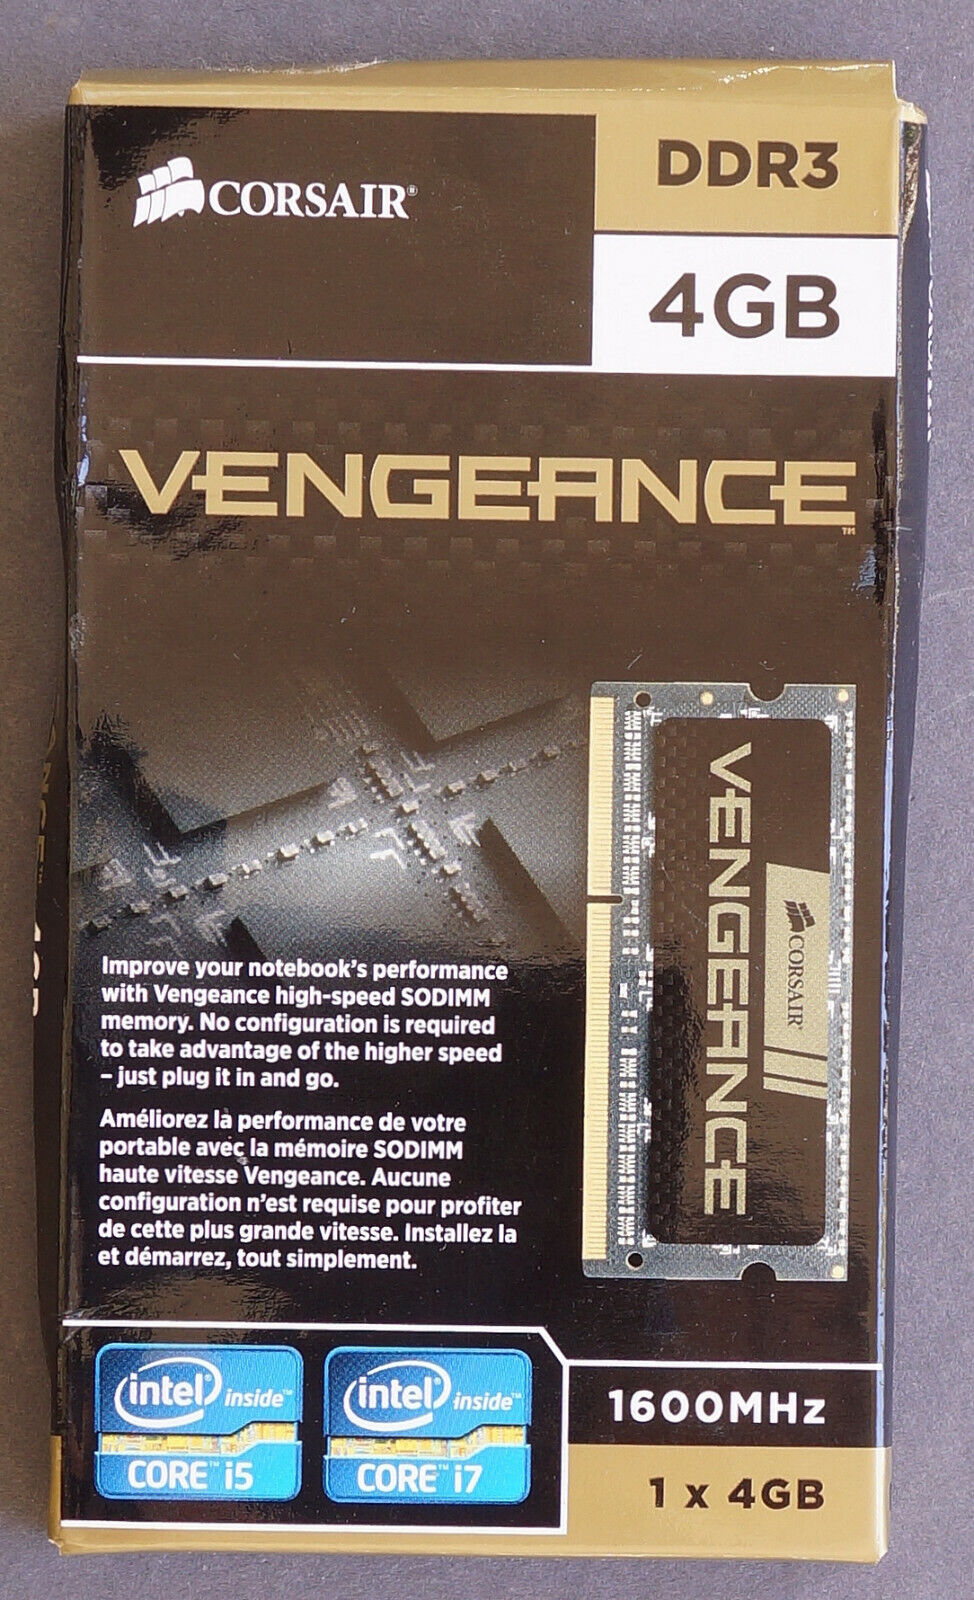 Corsair Vengeance DDR3 4GB SODIMM laptop memory